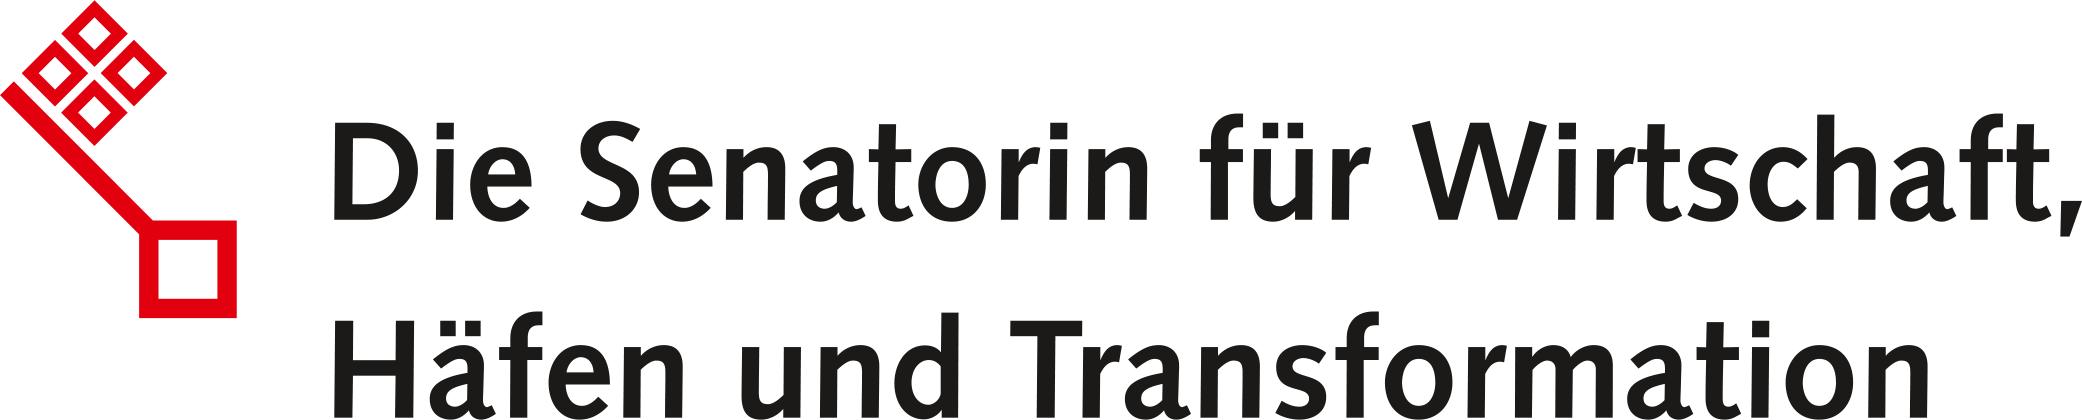 Logo der Senatorin für Wirtschaft, Häfen und Transformation